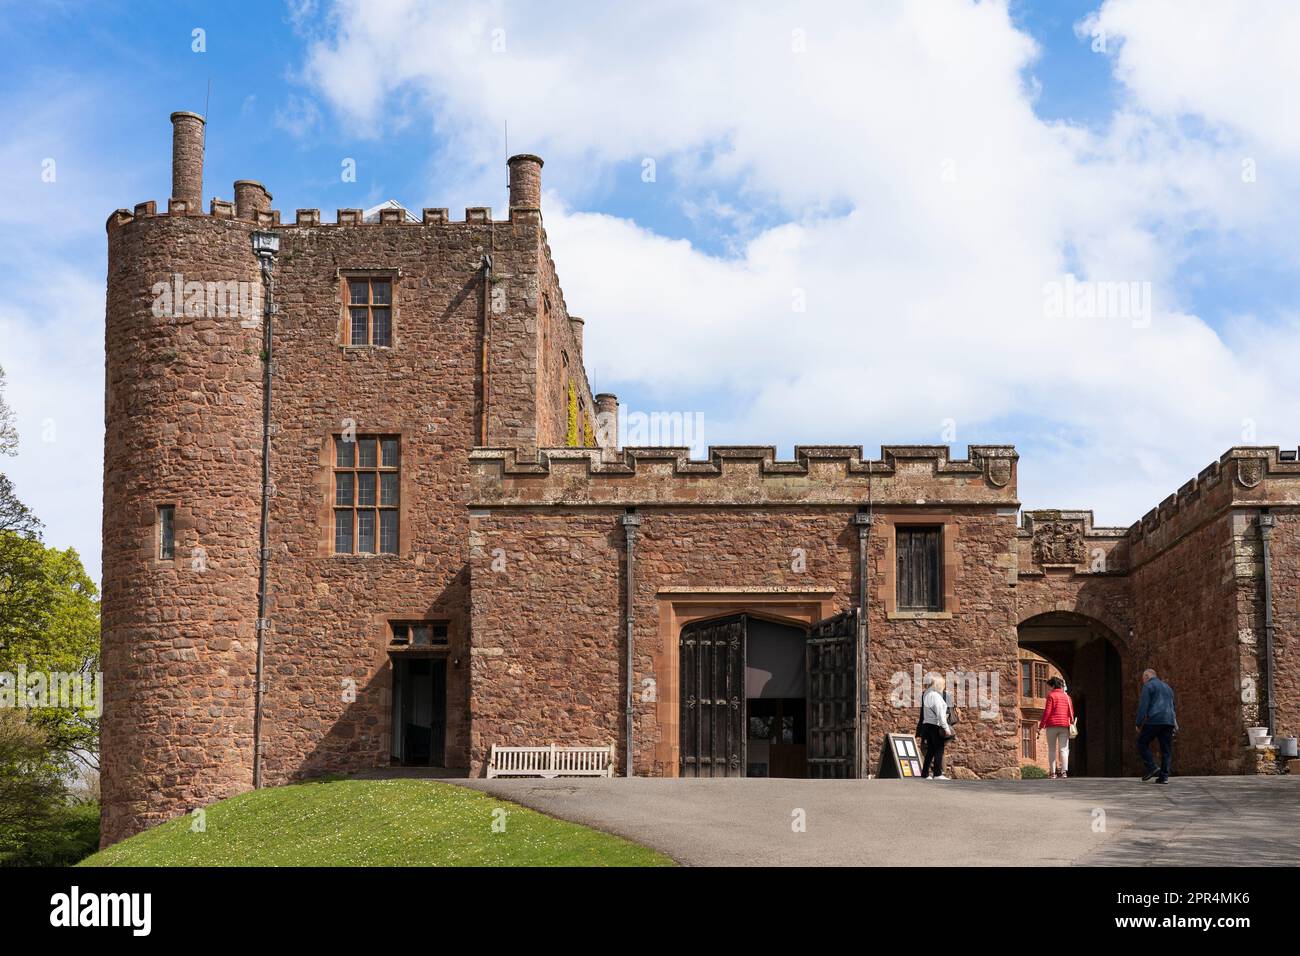 Persone che entrano nel cancello esterno ingresso al Castello di Powis, una fortezza medievale di arenaria di grado 1 e casa di campagna vicino a Welshpool, Galles Foto Stock